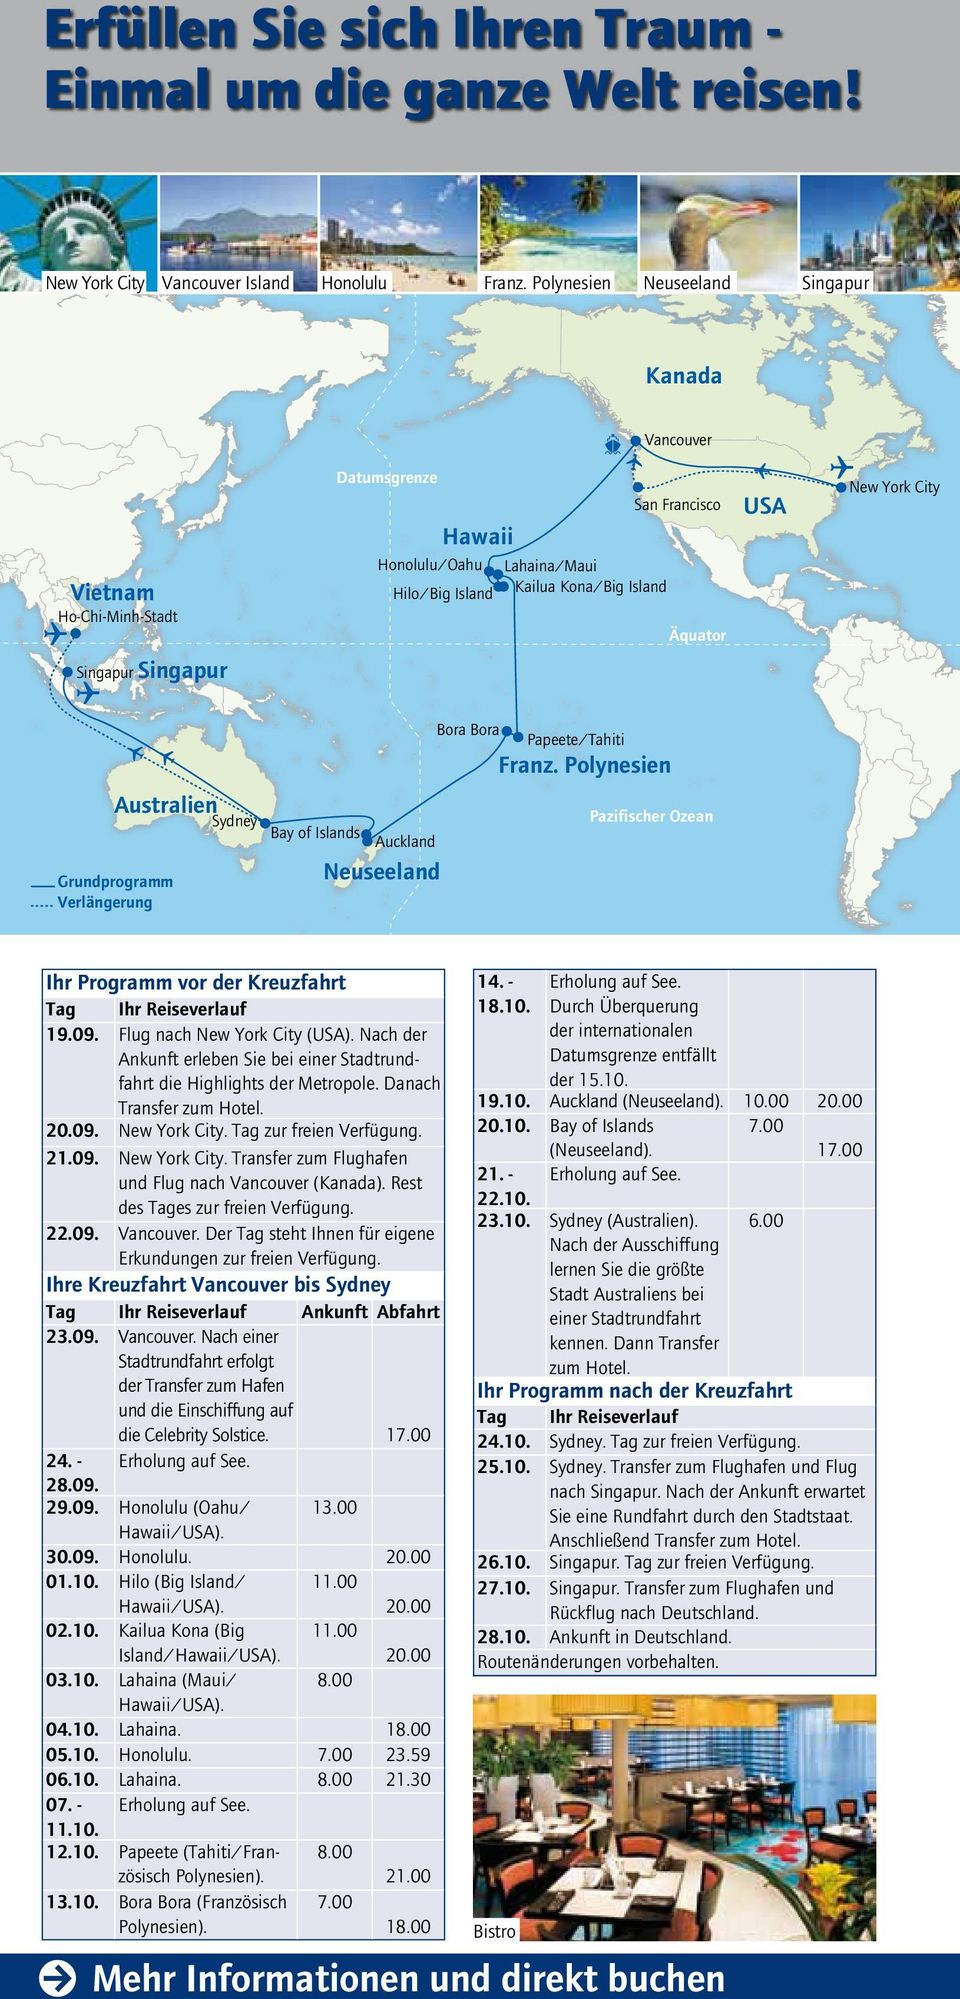 USA New York City Bora Bora Papeete/Tahiti Franz. Polynesien Australien Grundprogramm Verlängerung Sydney Bay of Islands Auckland Neuseeland Pazifischer Ozean Ihr Programm vor der Kreuzfahrt 14.